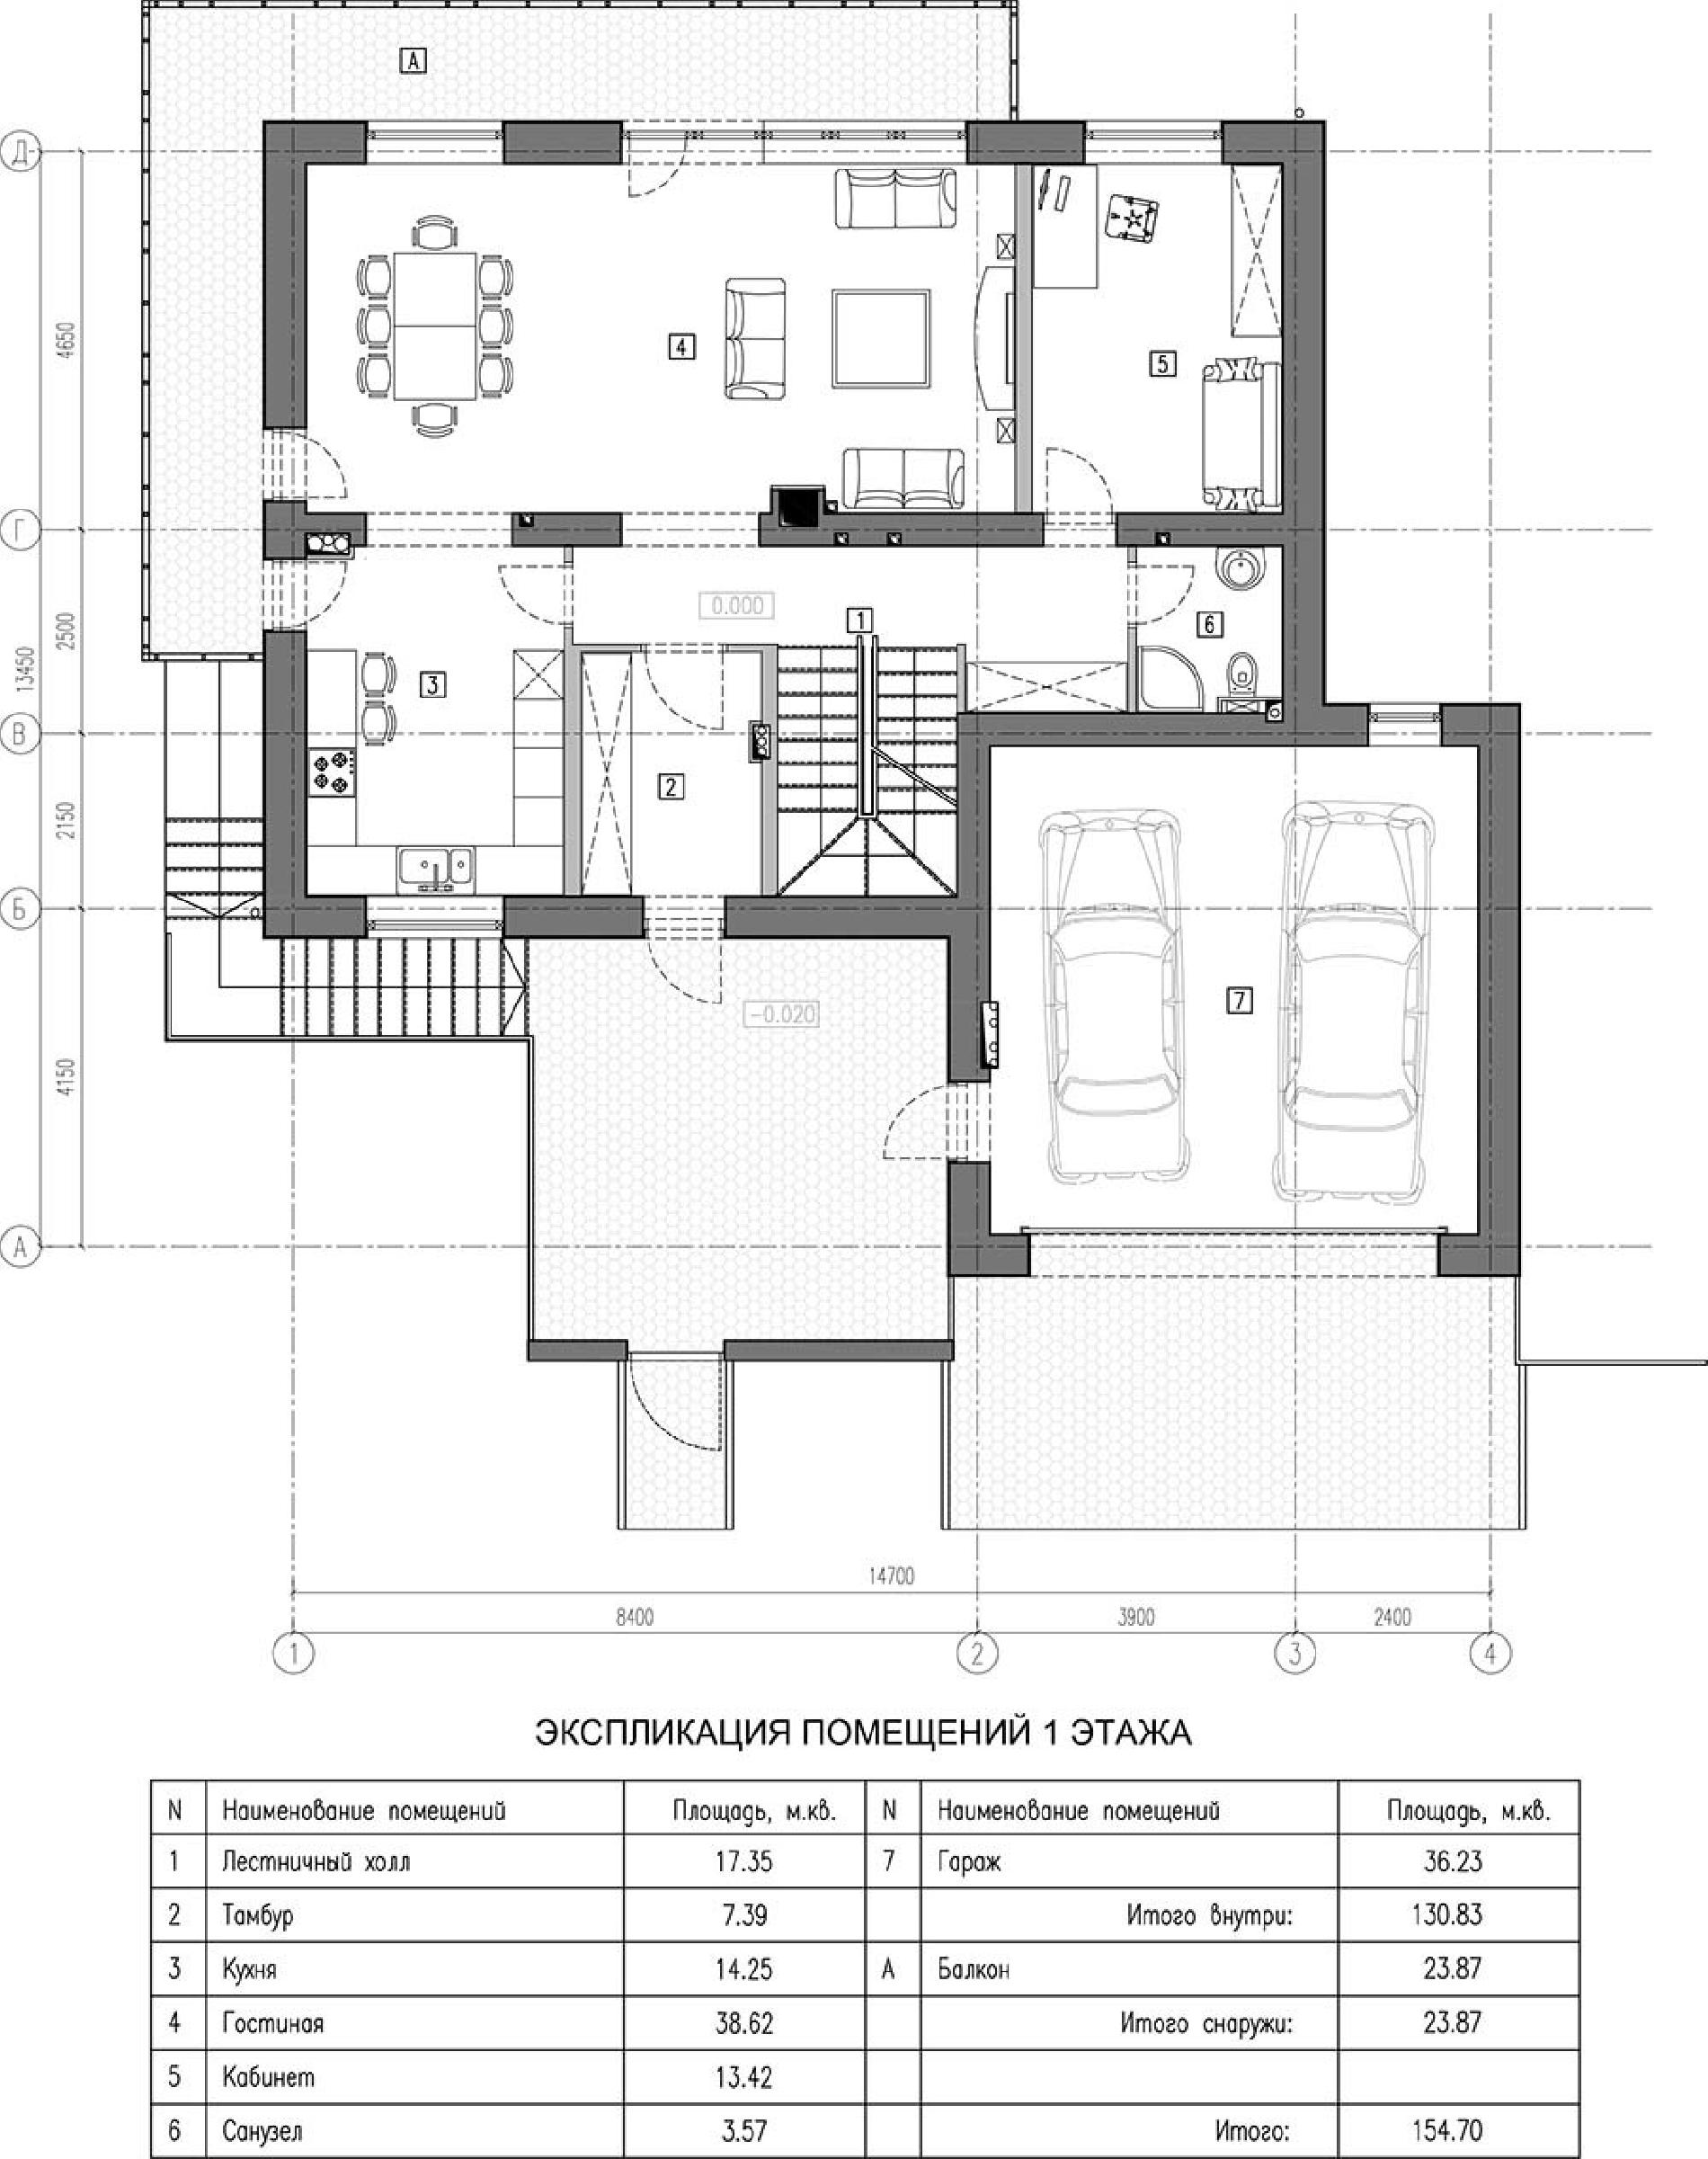 Планировка проекта дома №kr-337 kr-337_p1.jpg